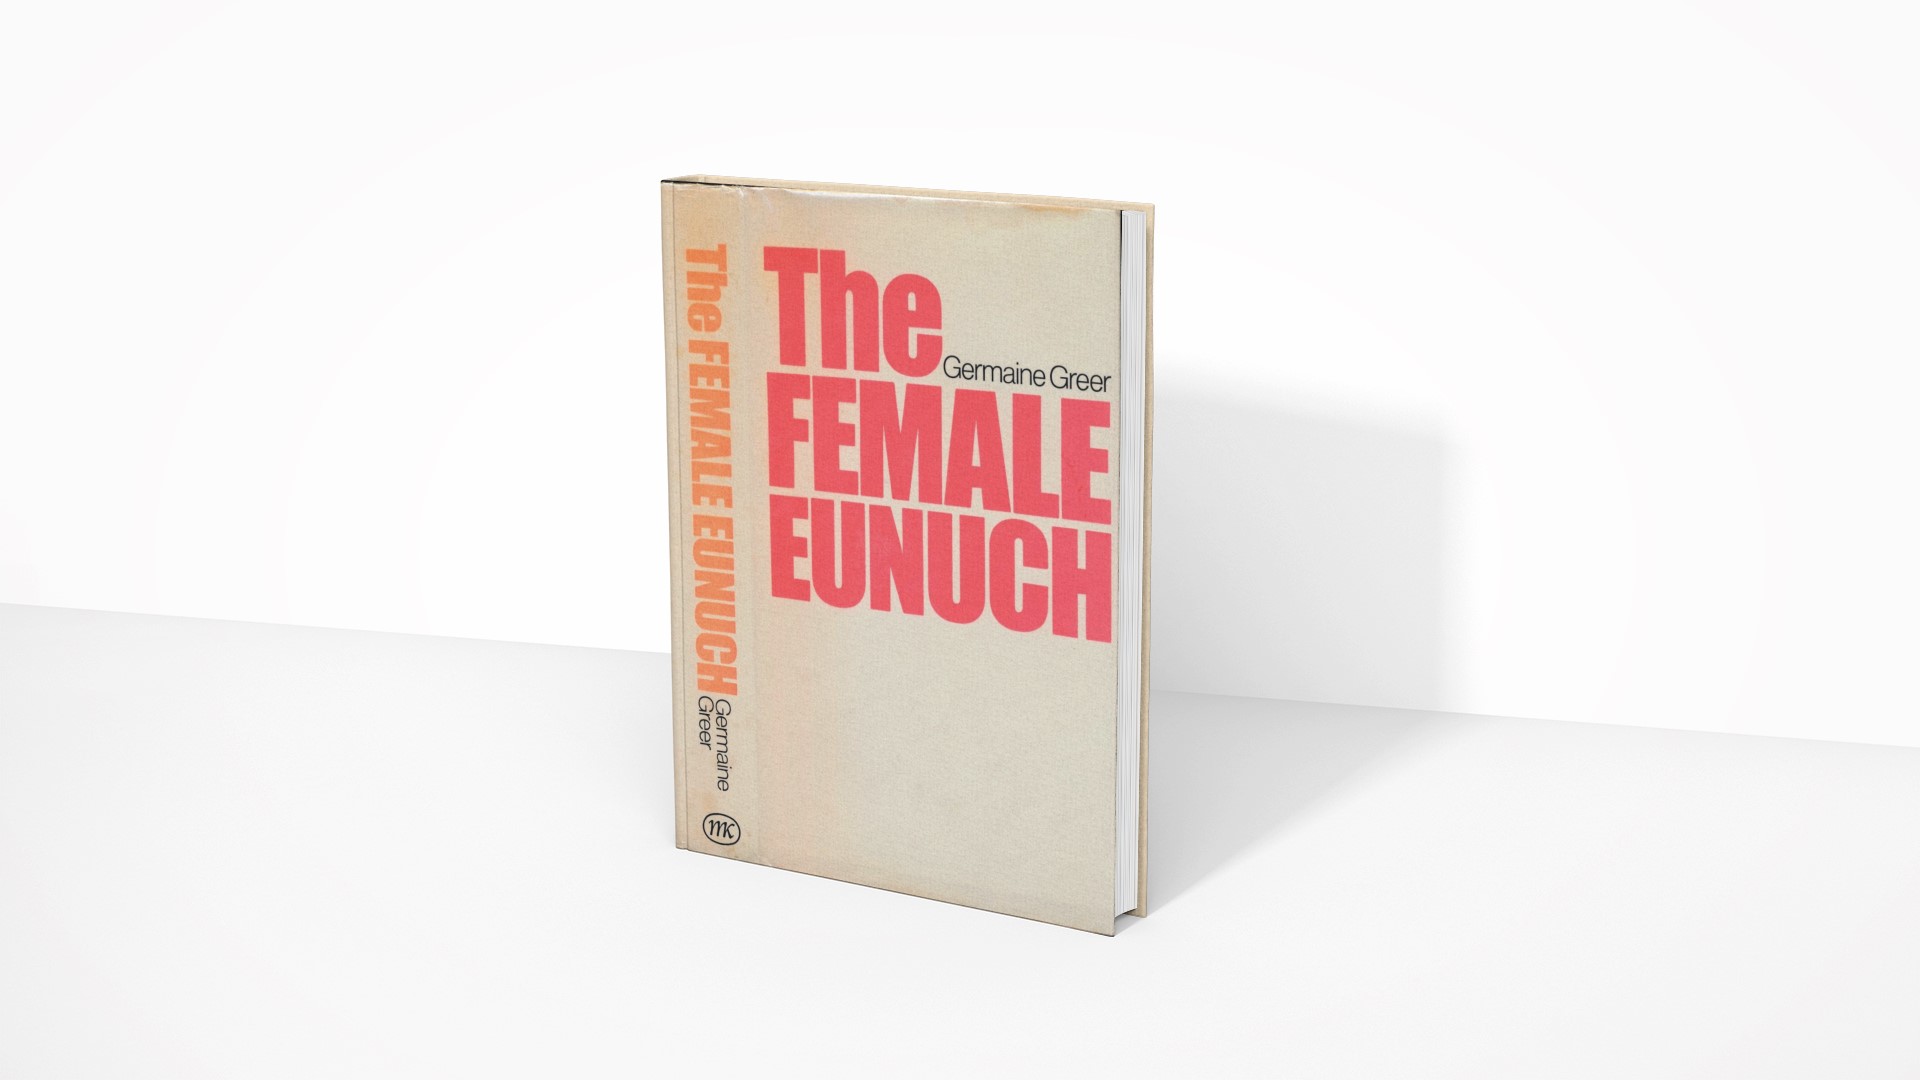 The Female Eunuch - Germaine Greer